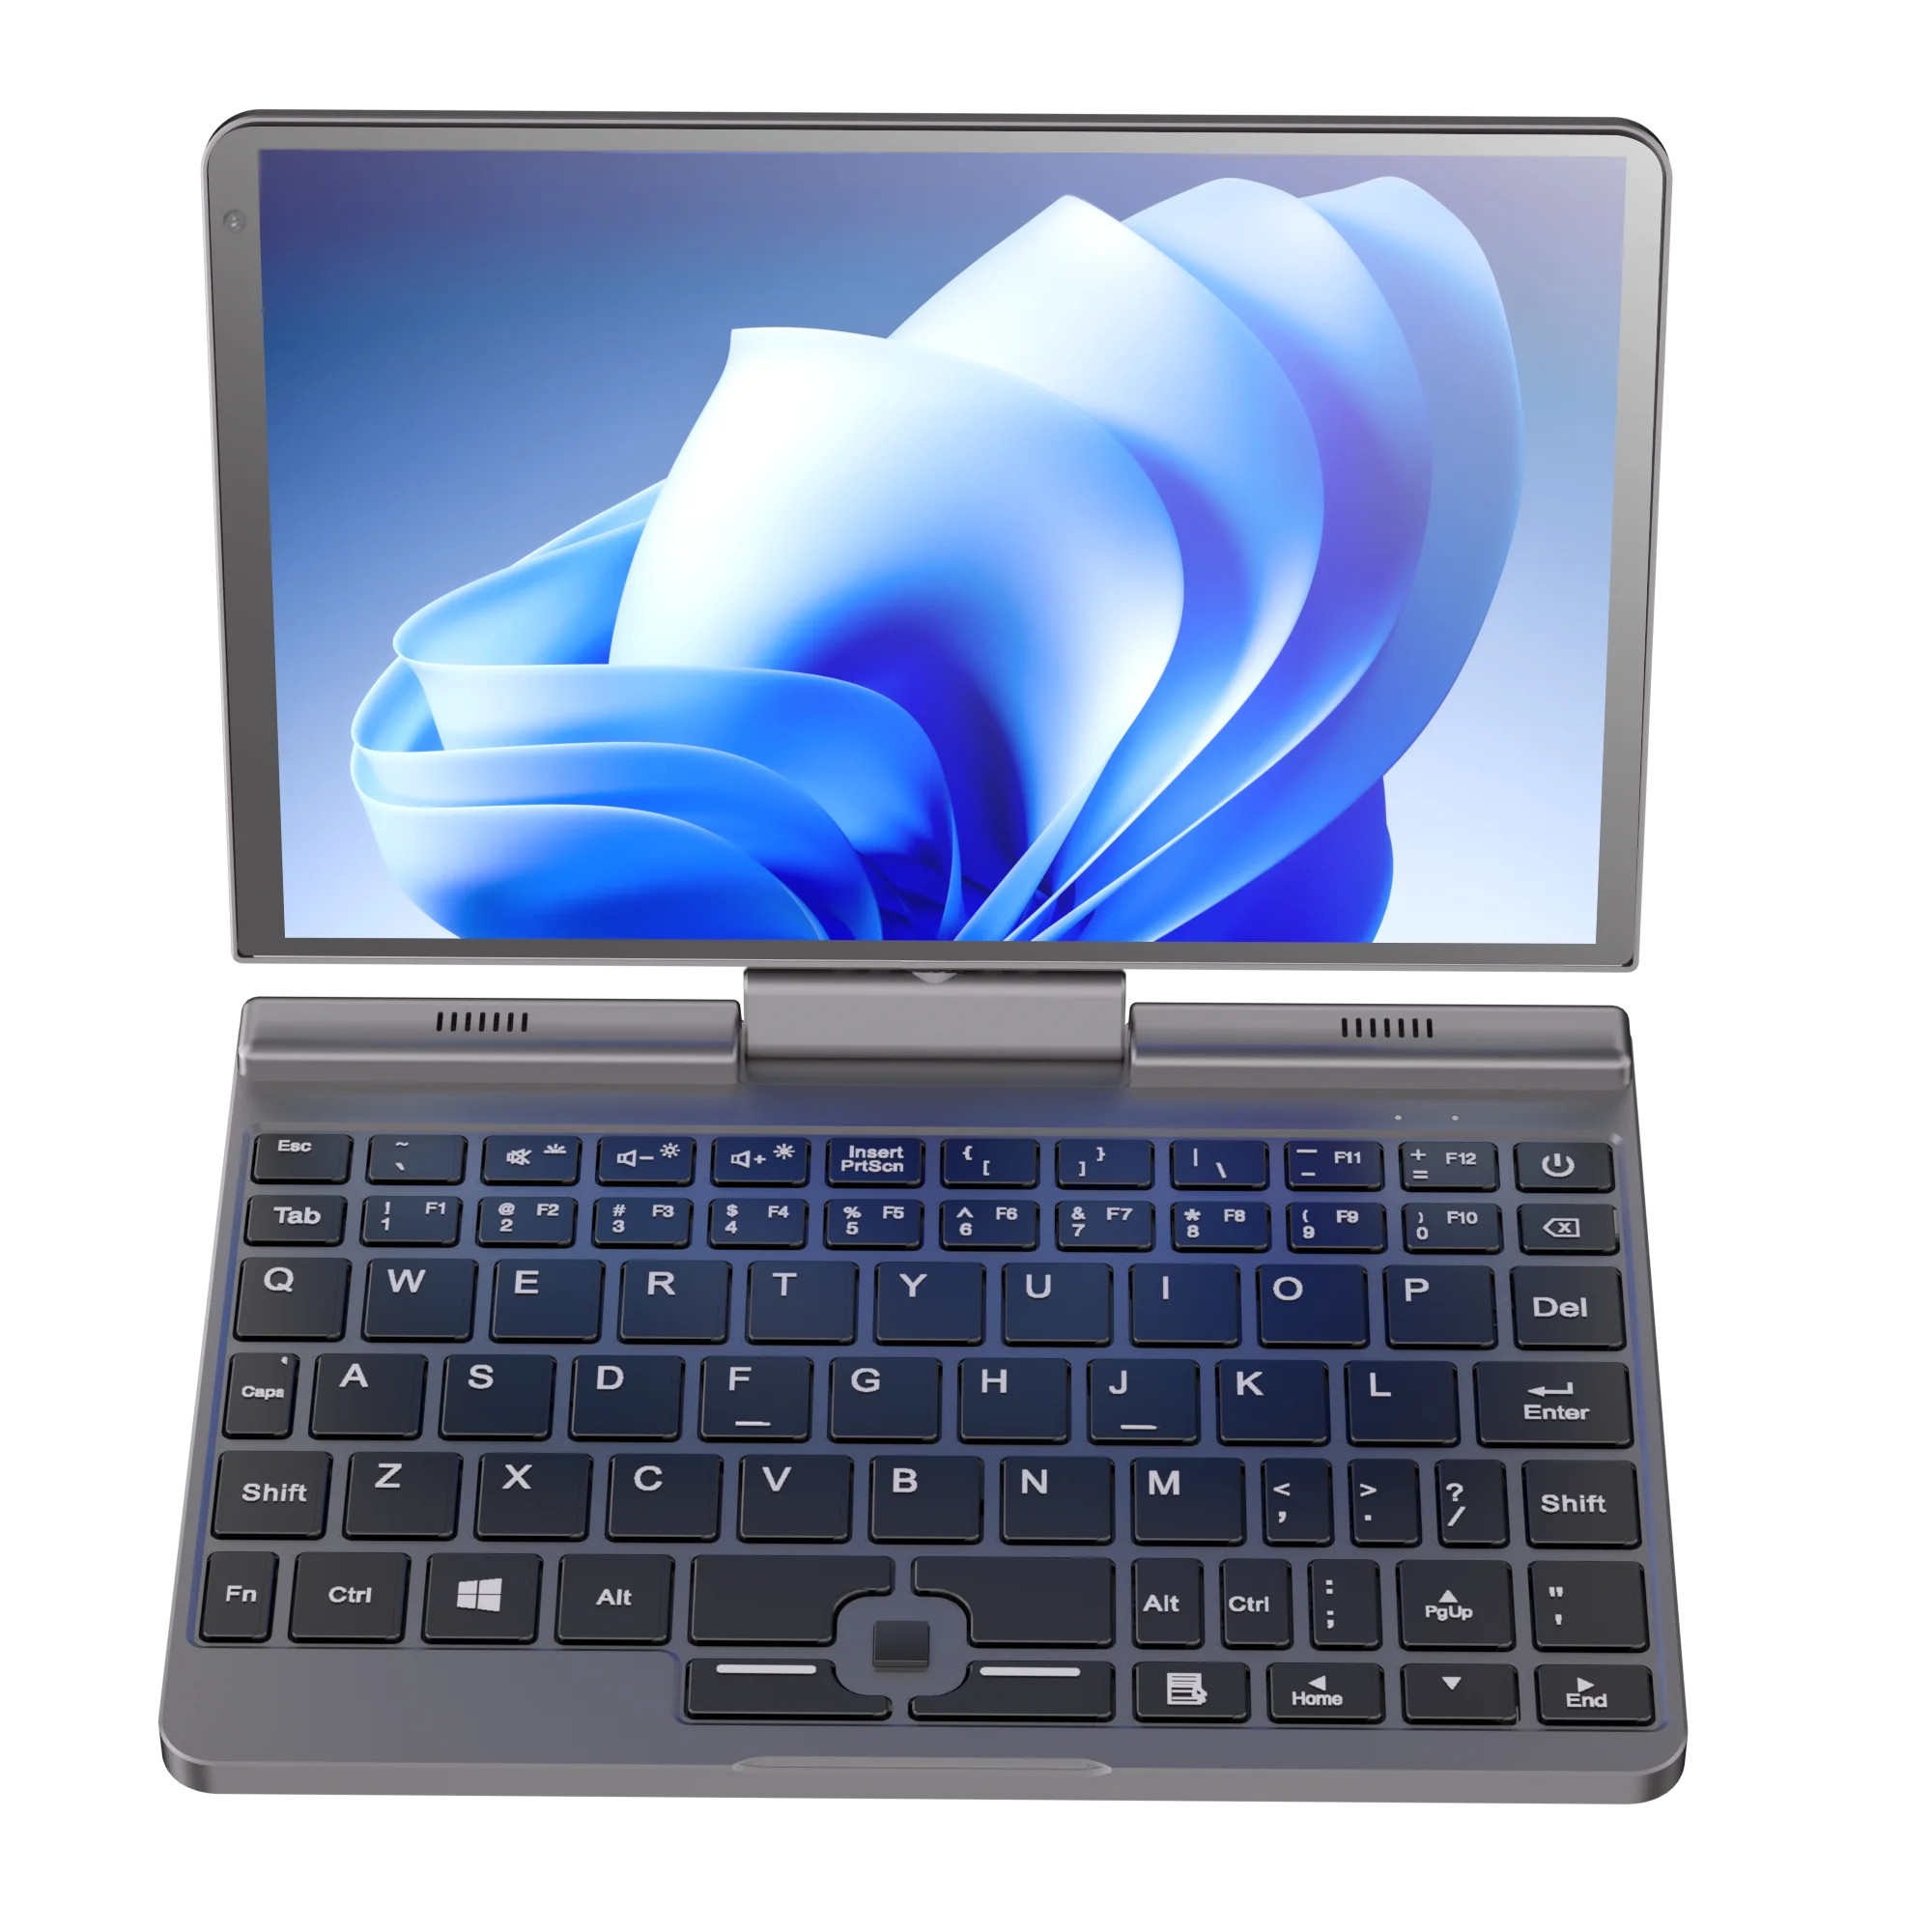 

YSJMNPC【Super Deal】12th Gen Mini Laptop Intel N100 Quad Core 8 Inch Screen LPDDR5 12G 4800MHz Windows10/11Pro AX WiFi6 BT5.2